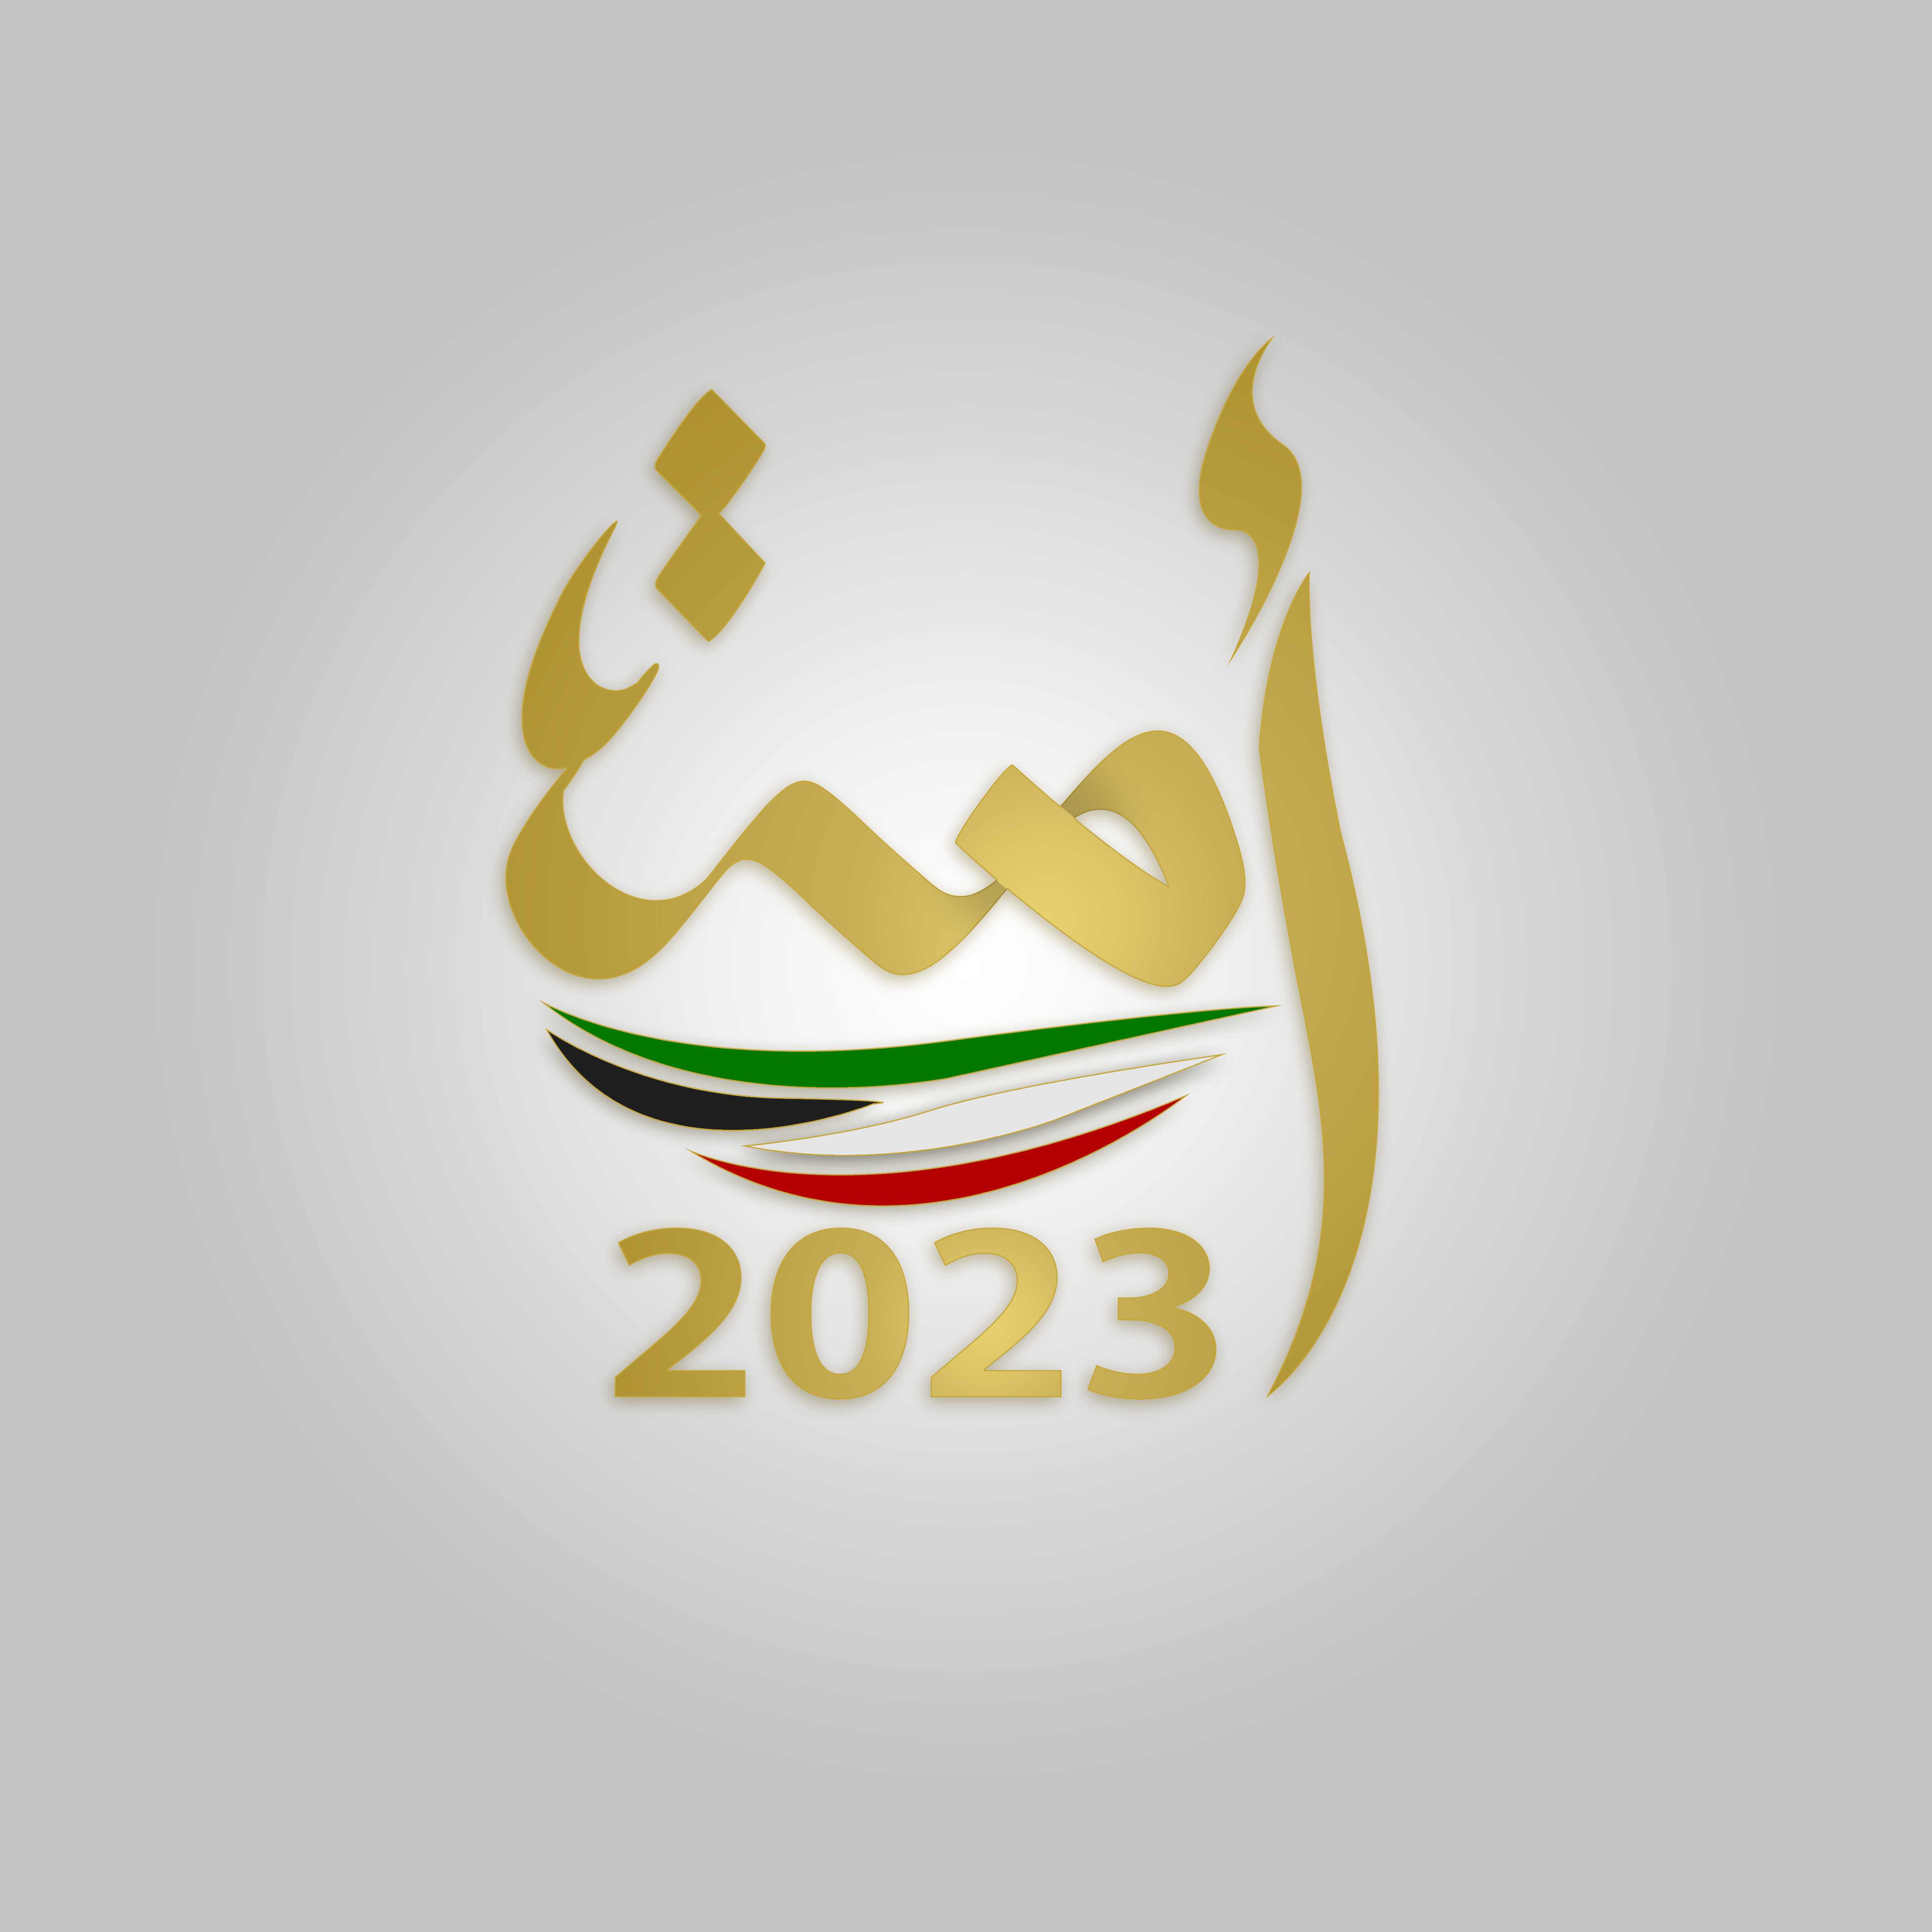 السير الذاتية للفائزين بعضوية مجلس الأمة الكويتي (أمة 2023) عن الدائرة الانتخابية الثالثة